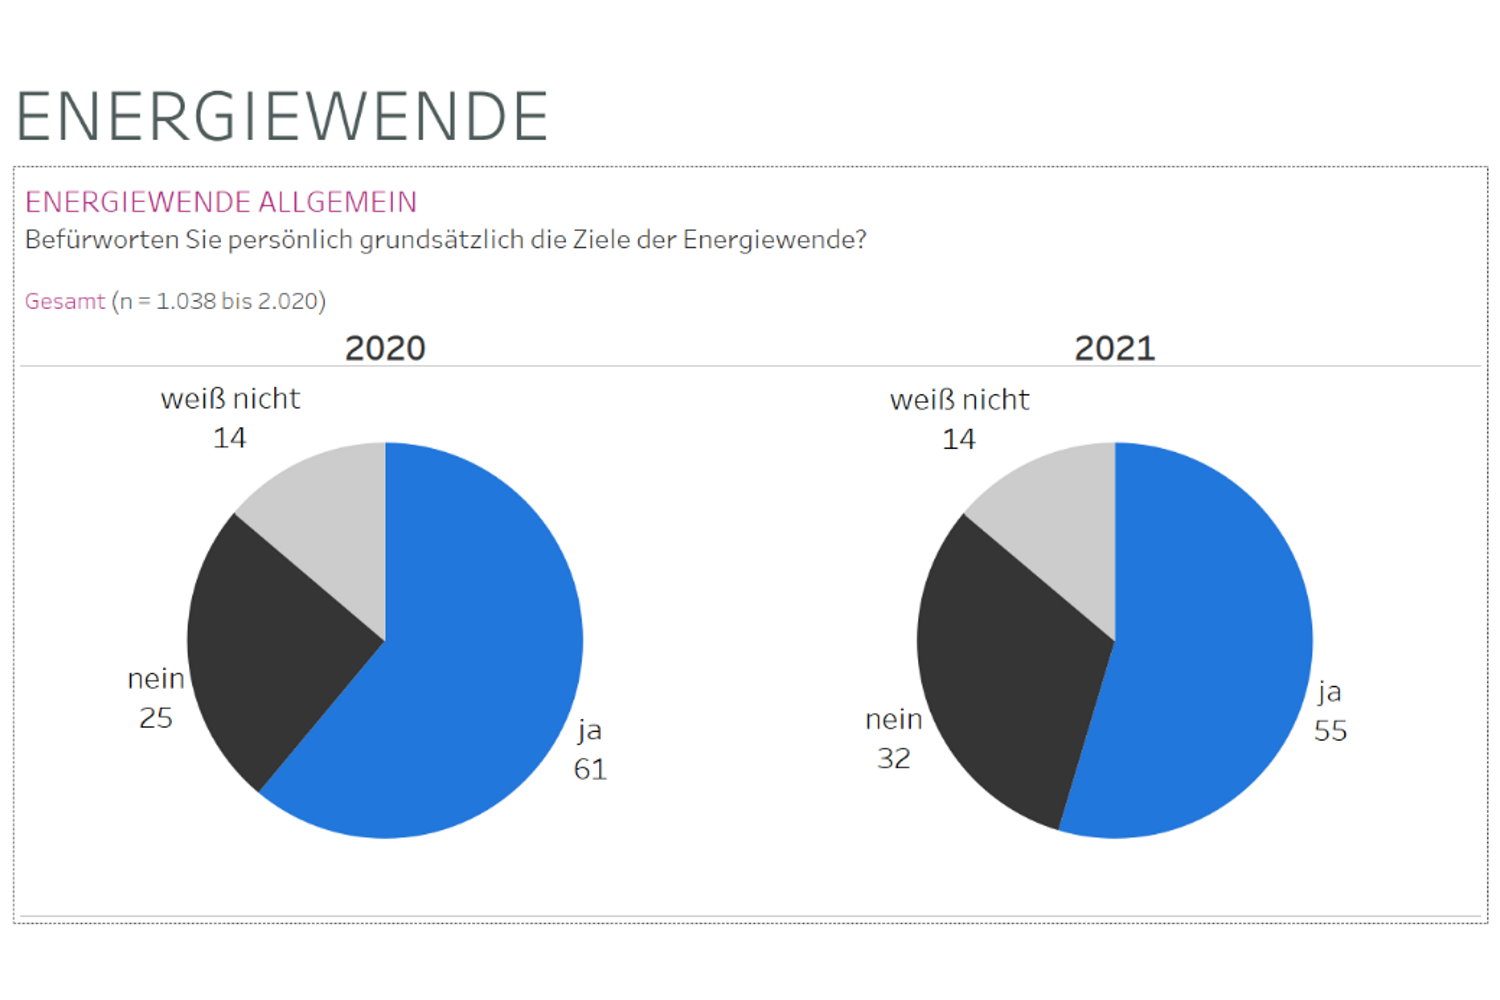 Befürworten Sie die Energiewende? Grafik: Mitteldeutschland Monitor